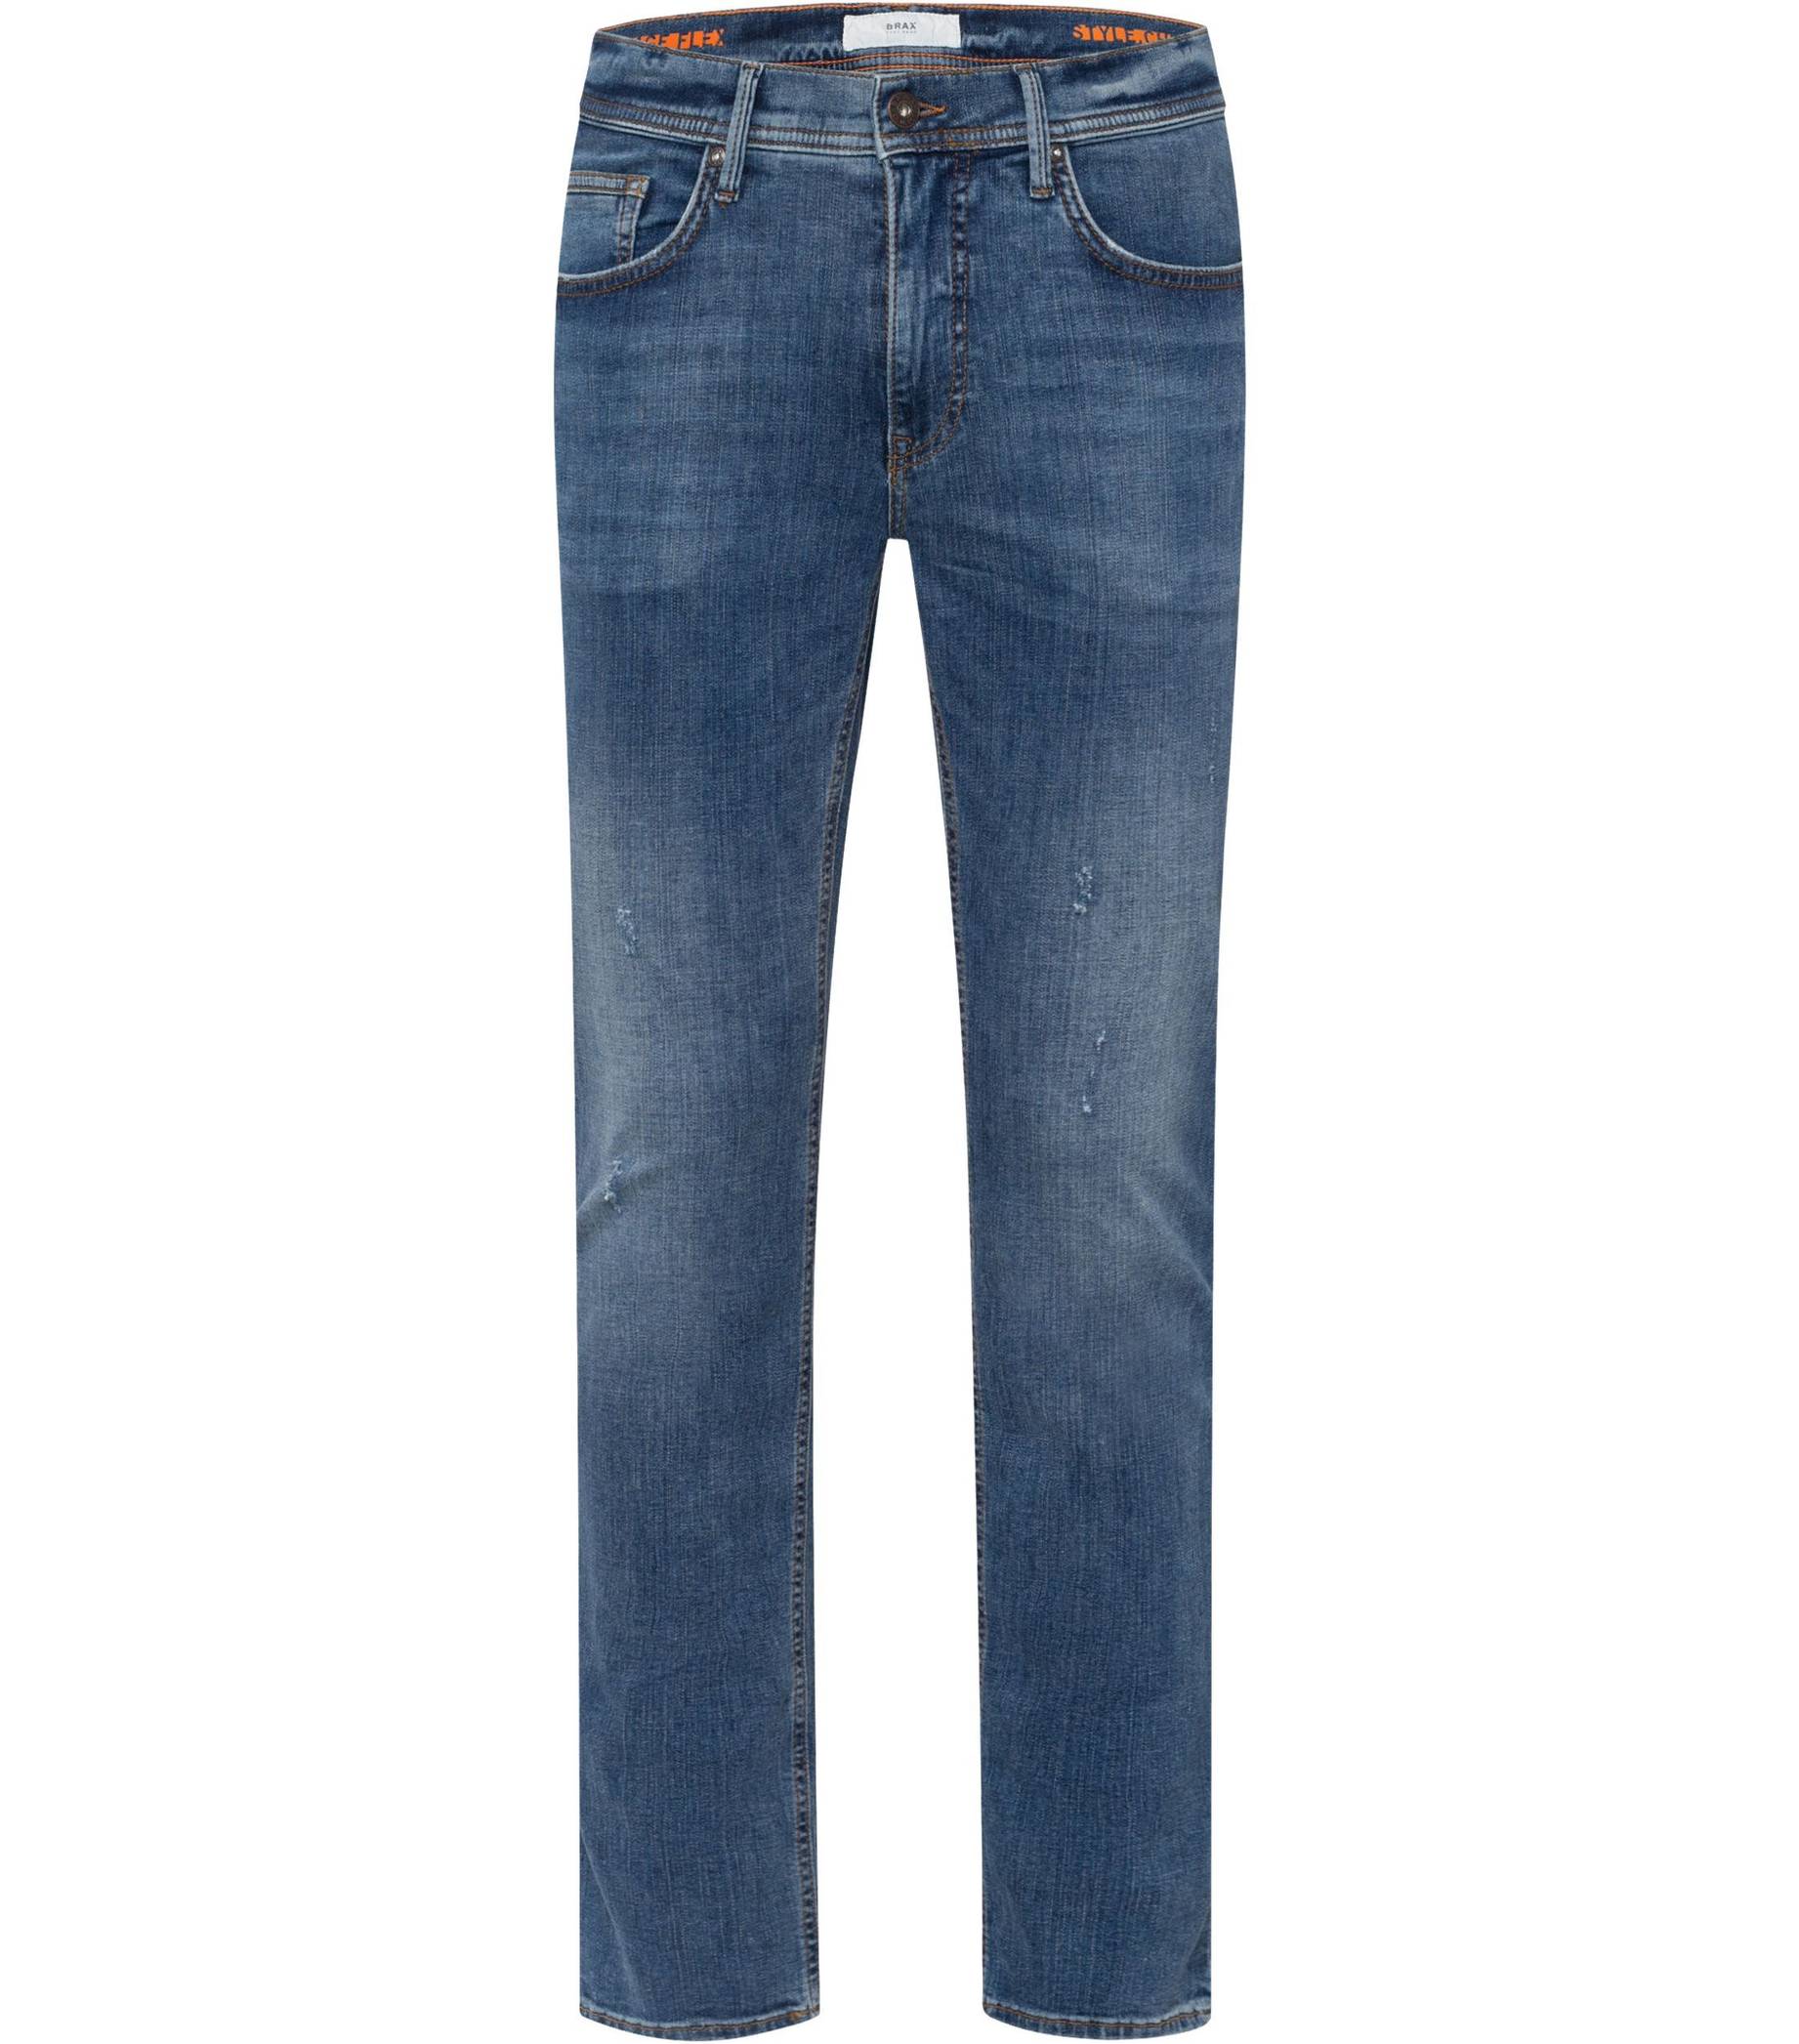 BRAX Herren Jeans STYLE.CHRIS Slim Fit kaufen | engelhorn